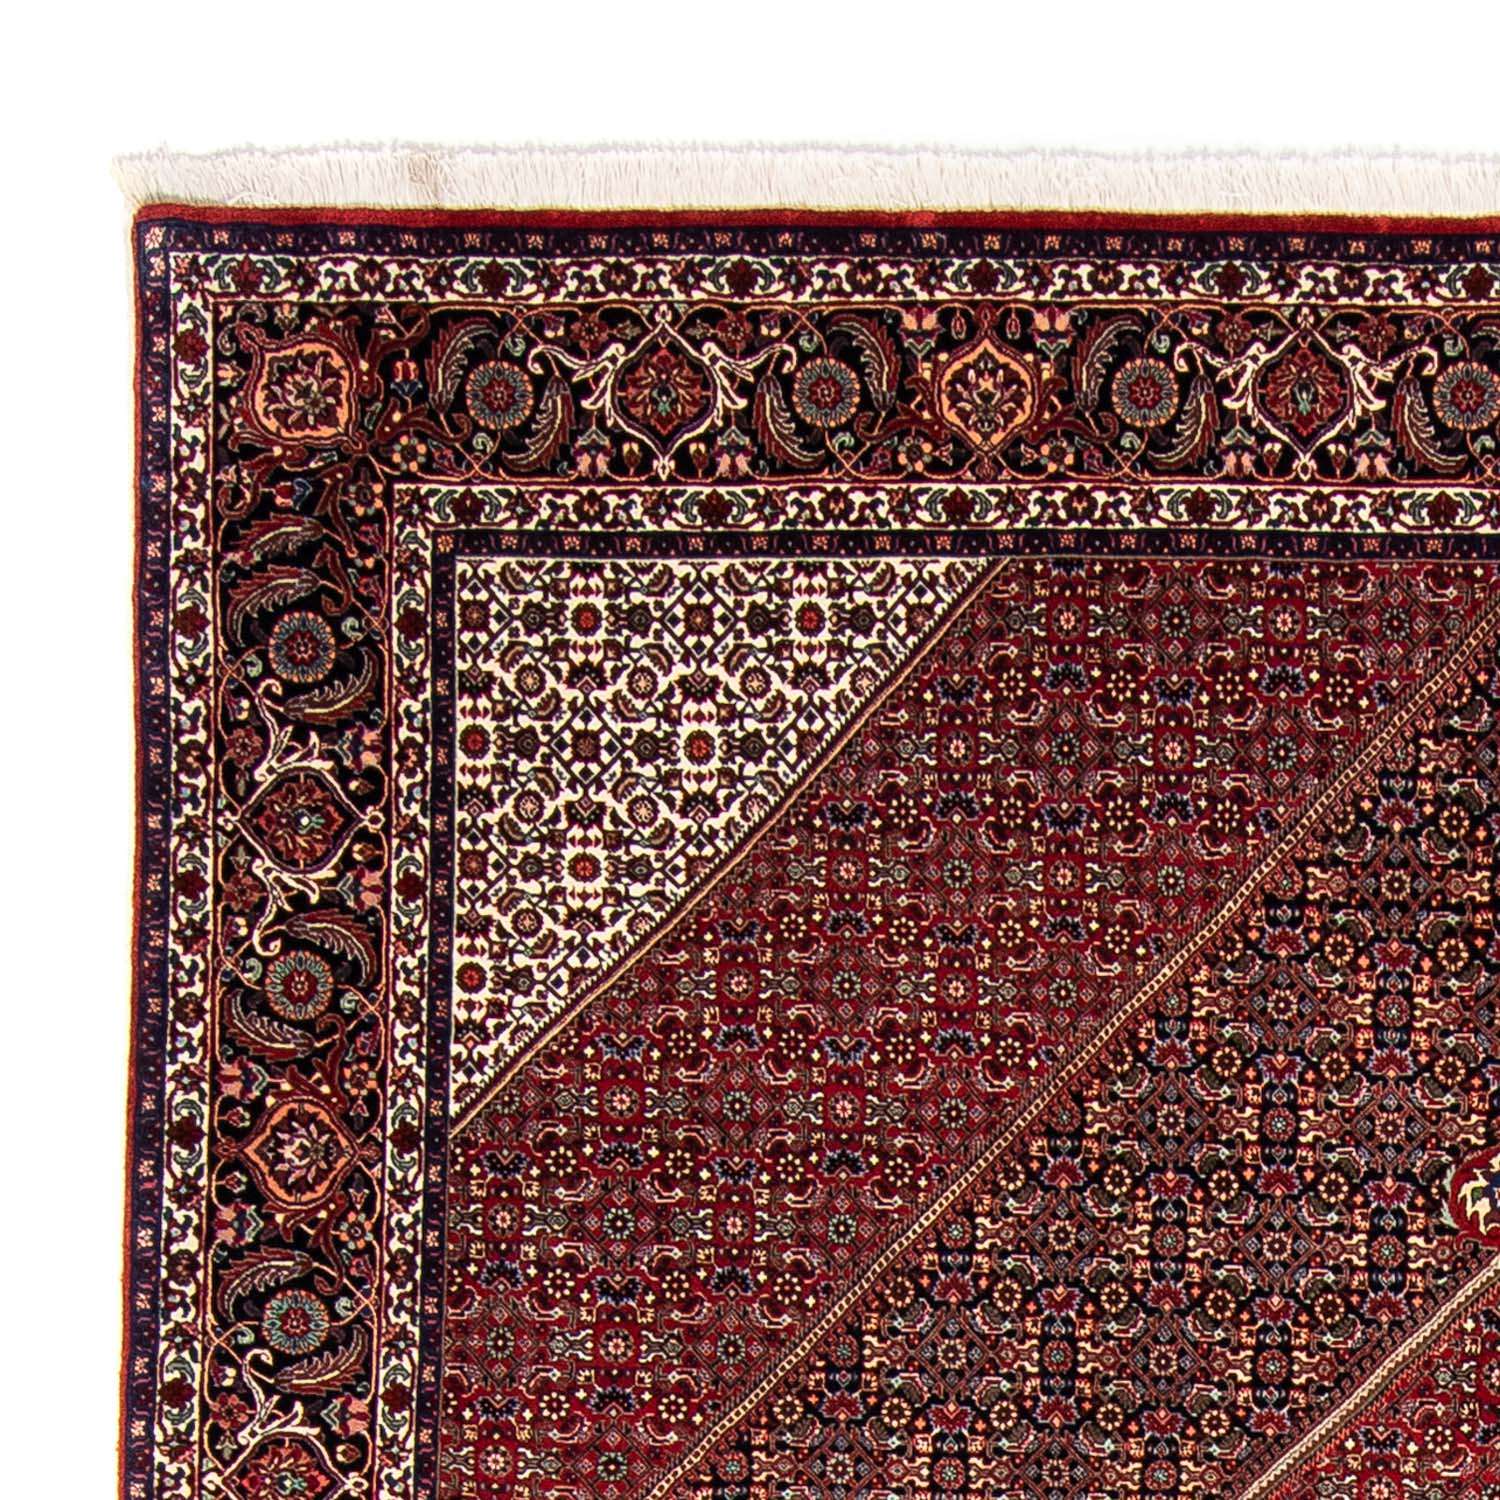 Perzisch tapijt - Bijar - 350 x 252 cm - donkerrood